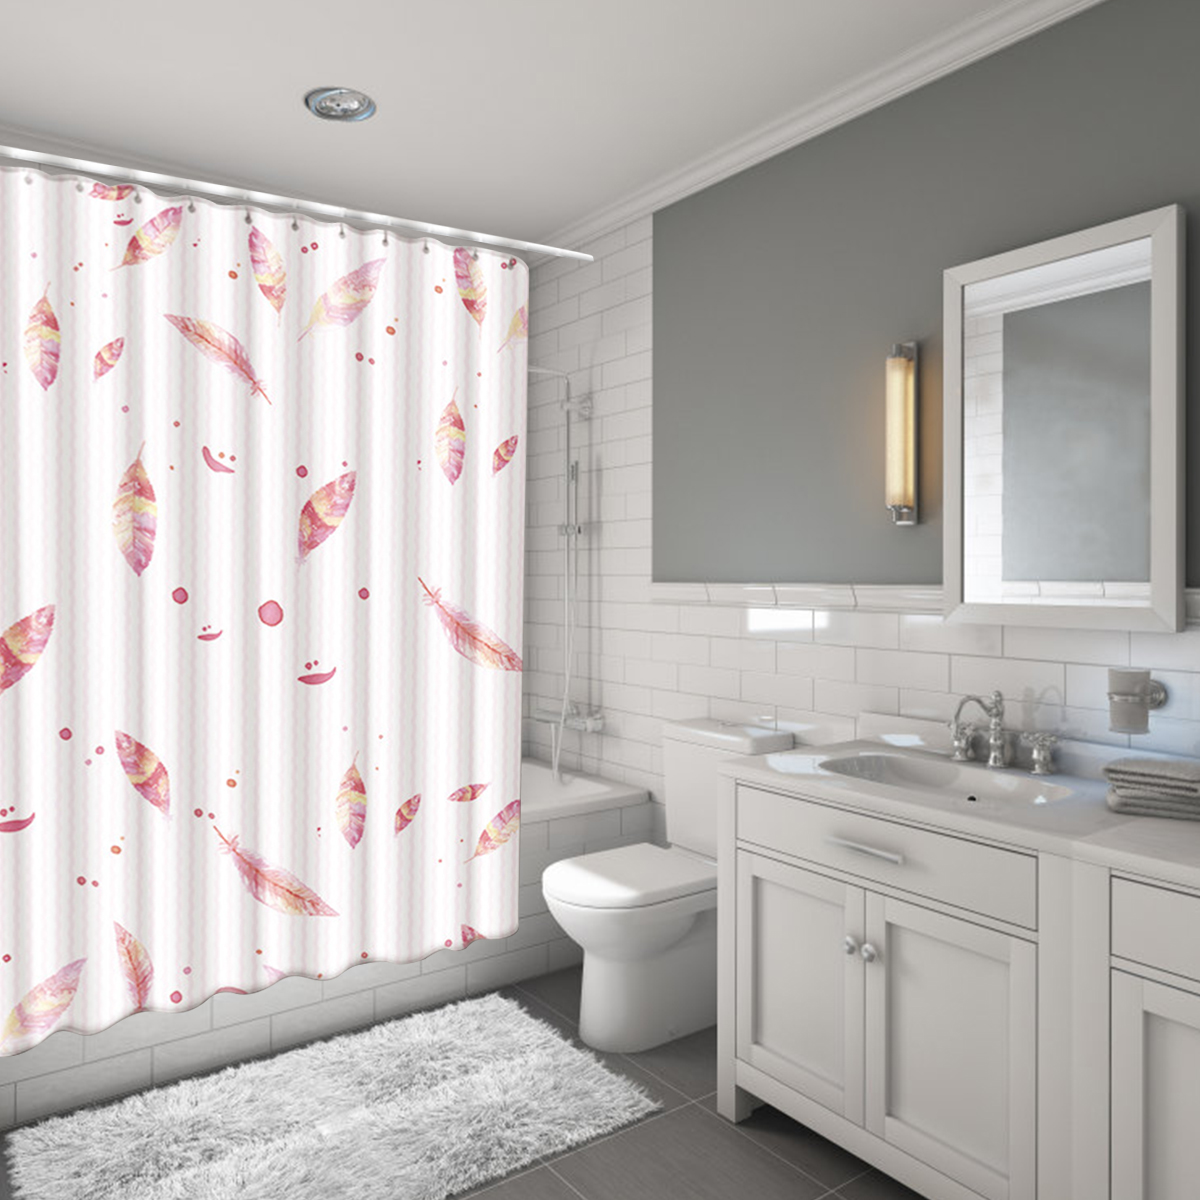 1 set de salle de bains tapis antiderapant couvercle couvercle de toilette tapis de bain rideaux et crochets